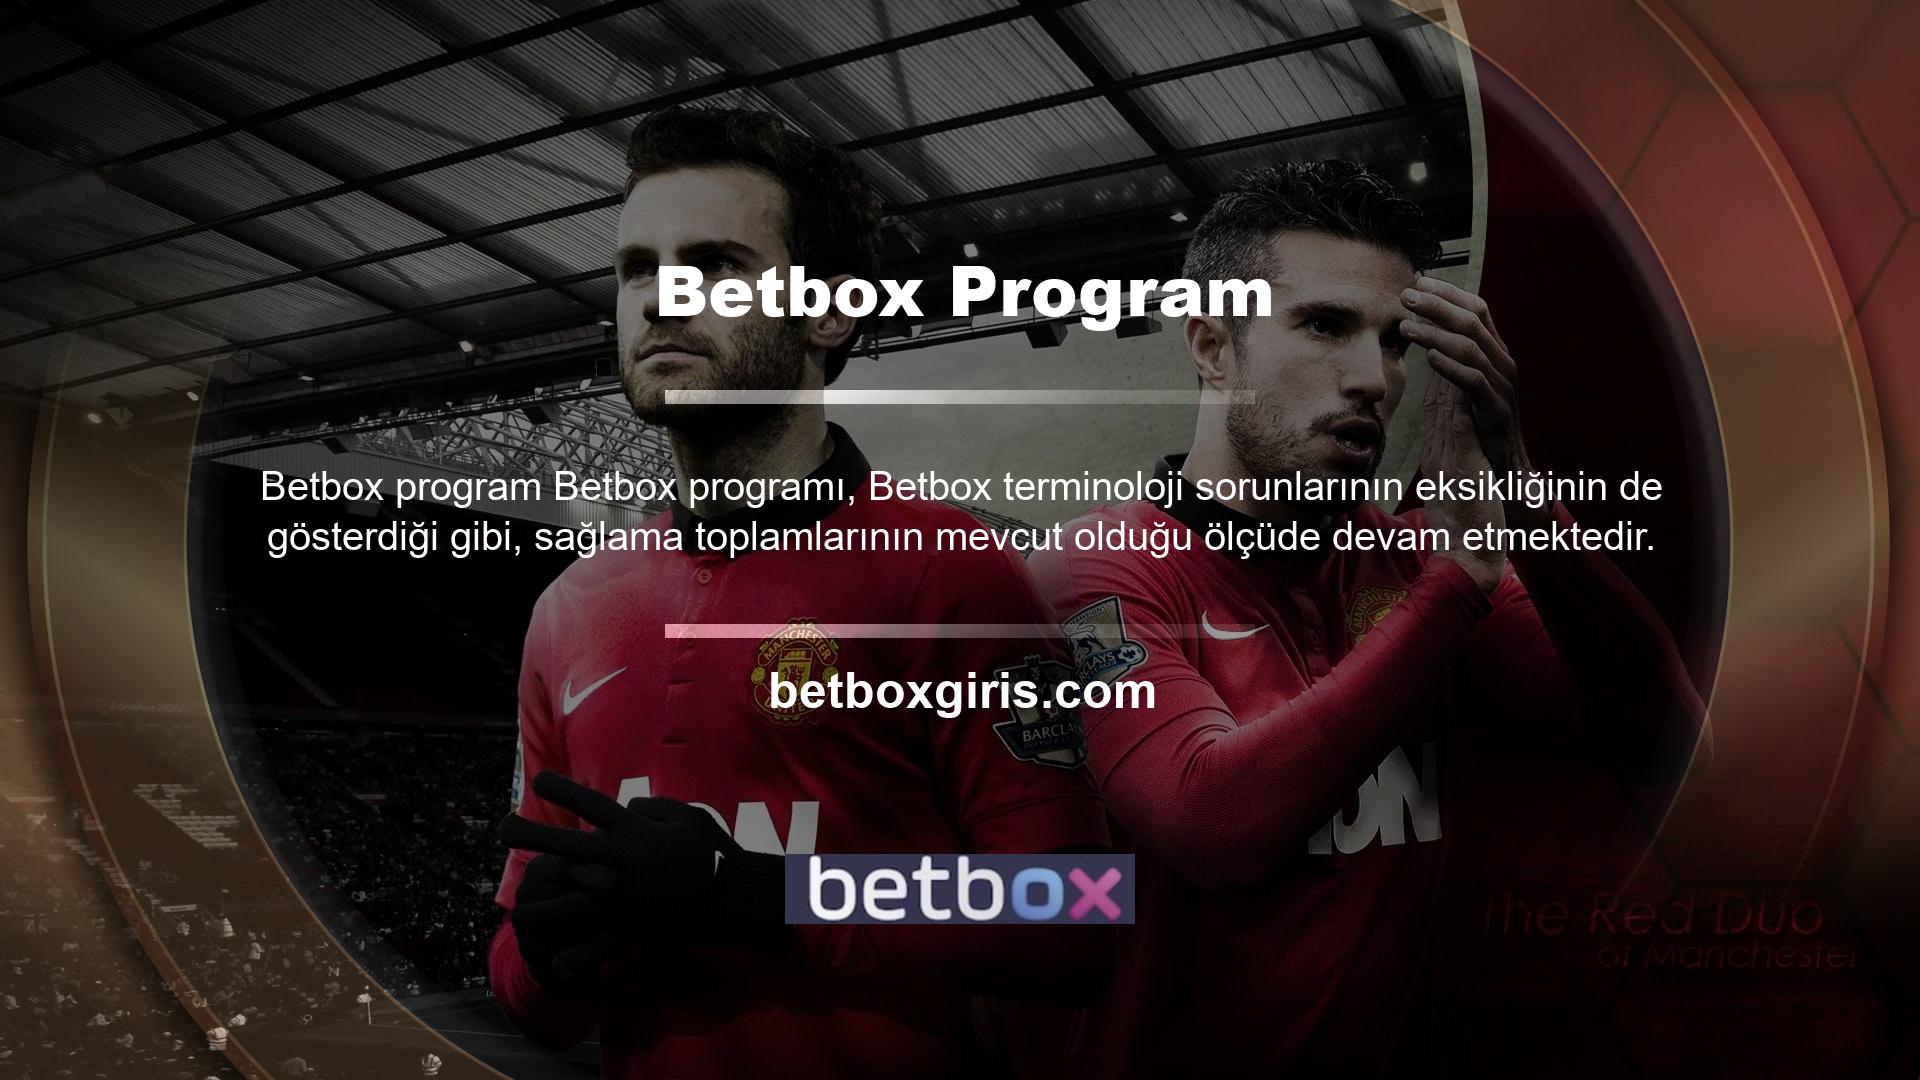 Betbox programı, otomatik olarak güncellenen sayfalarla kurulduğu günden bu yana sorunsuz bir şekilde güvenilir bir şekilde çalışmaktadır